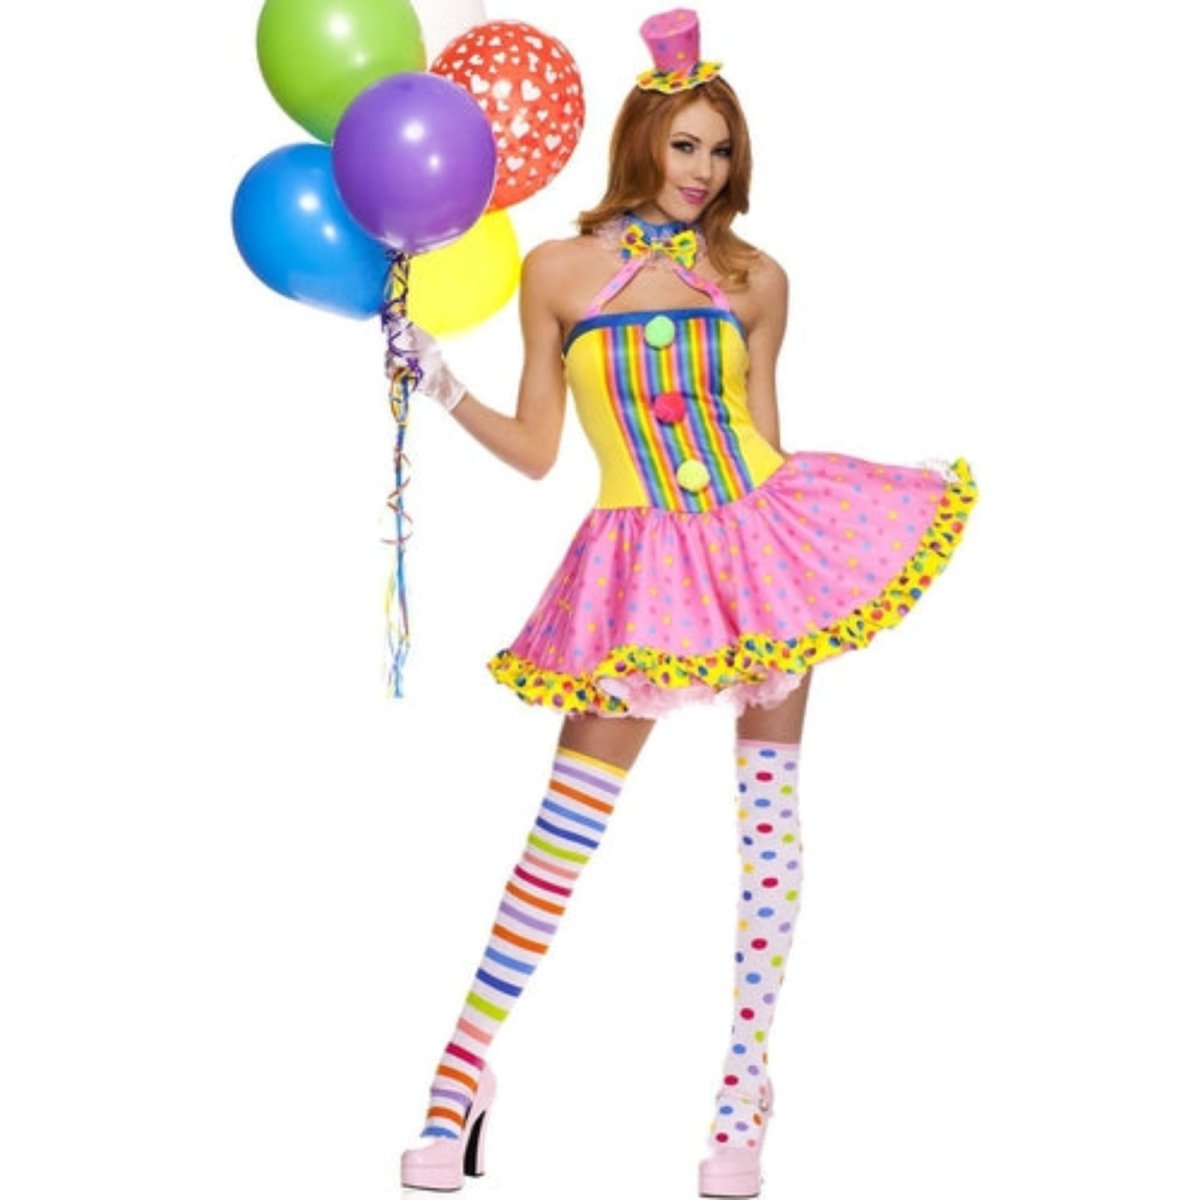 Circus Cutie Costume - worldclasscostumes